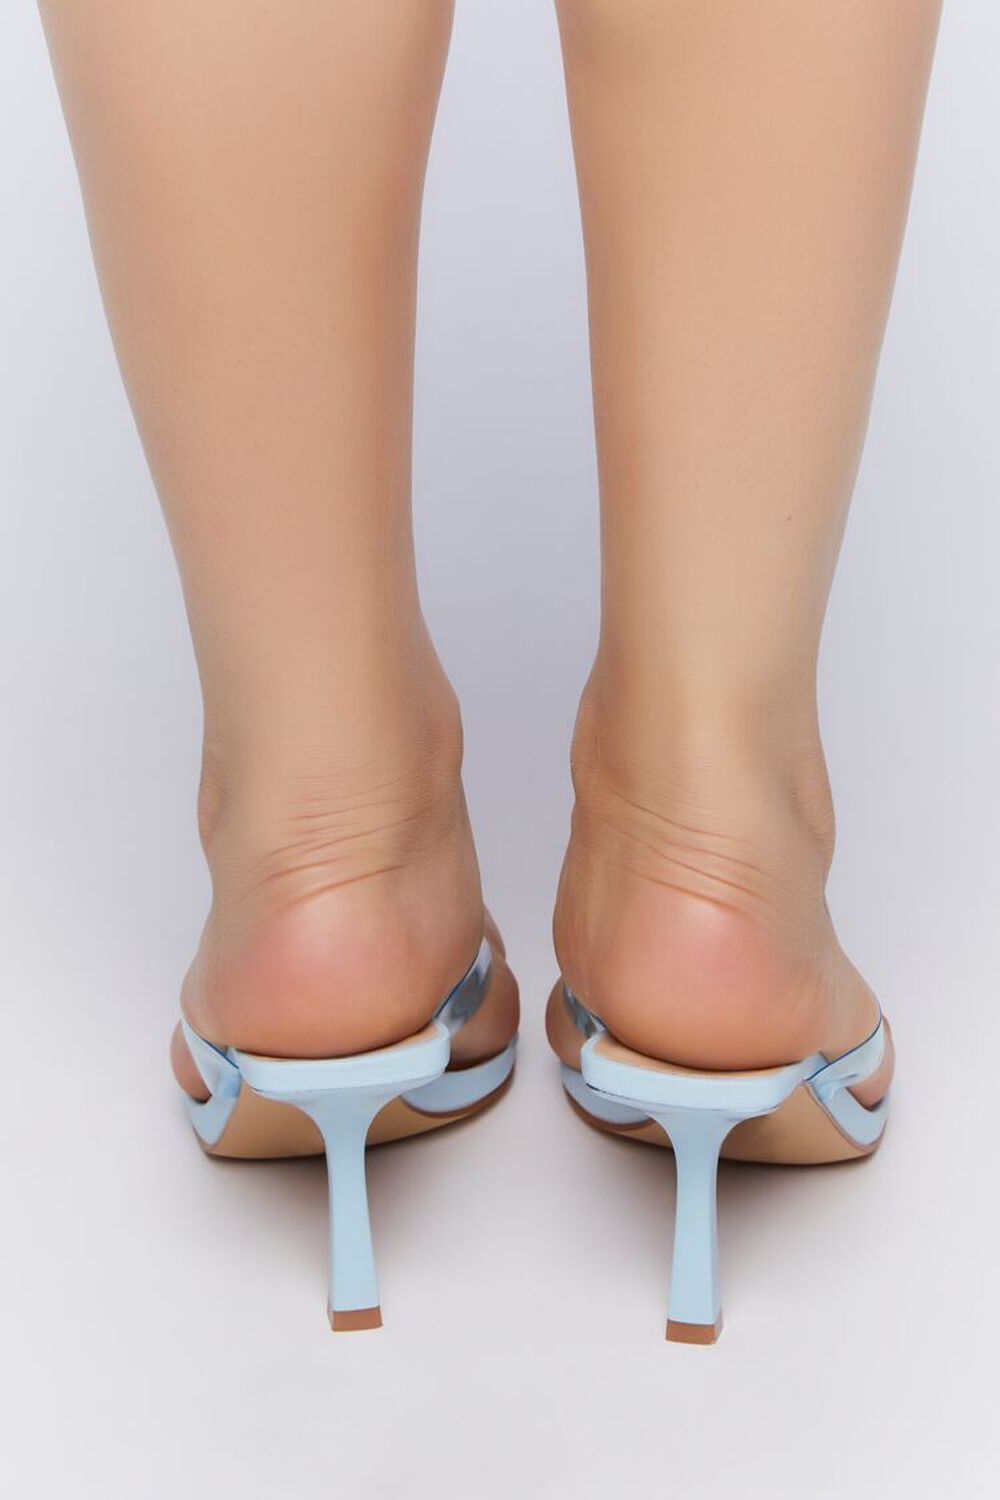 BLUE Vinyl Thong Heels, image 3